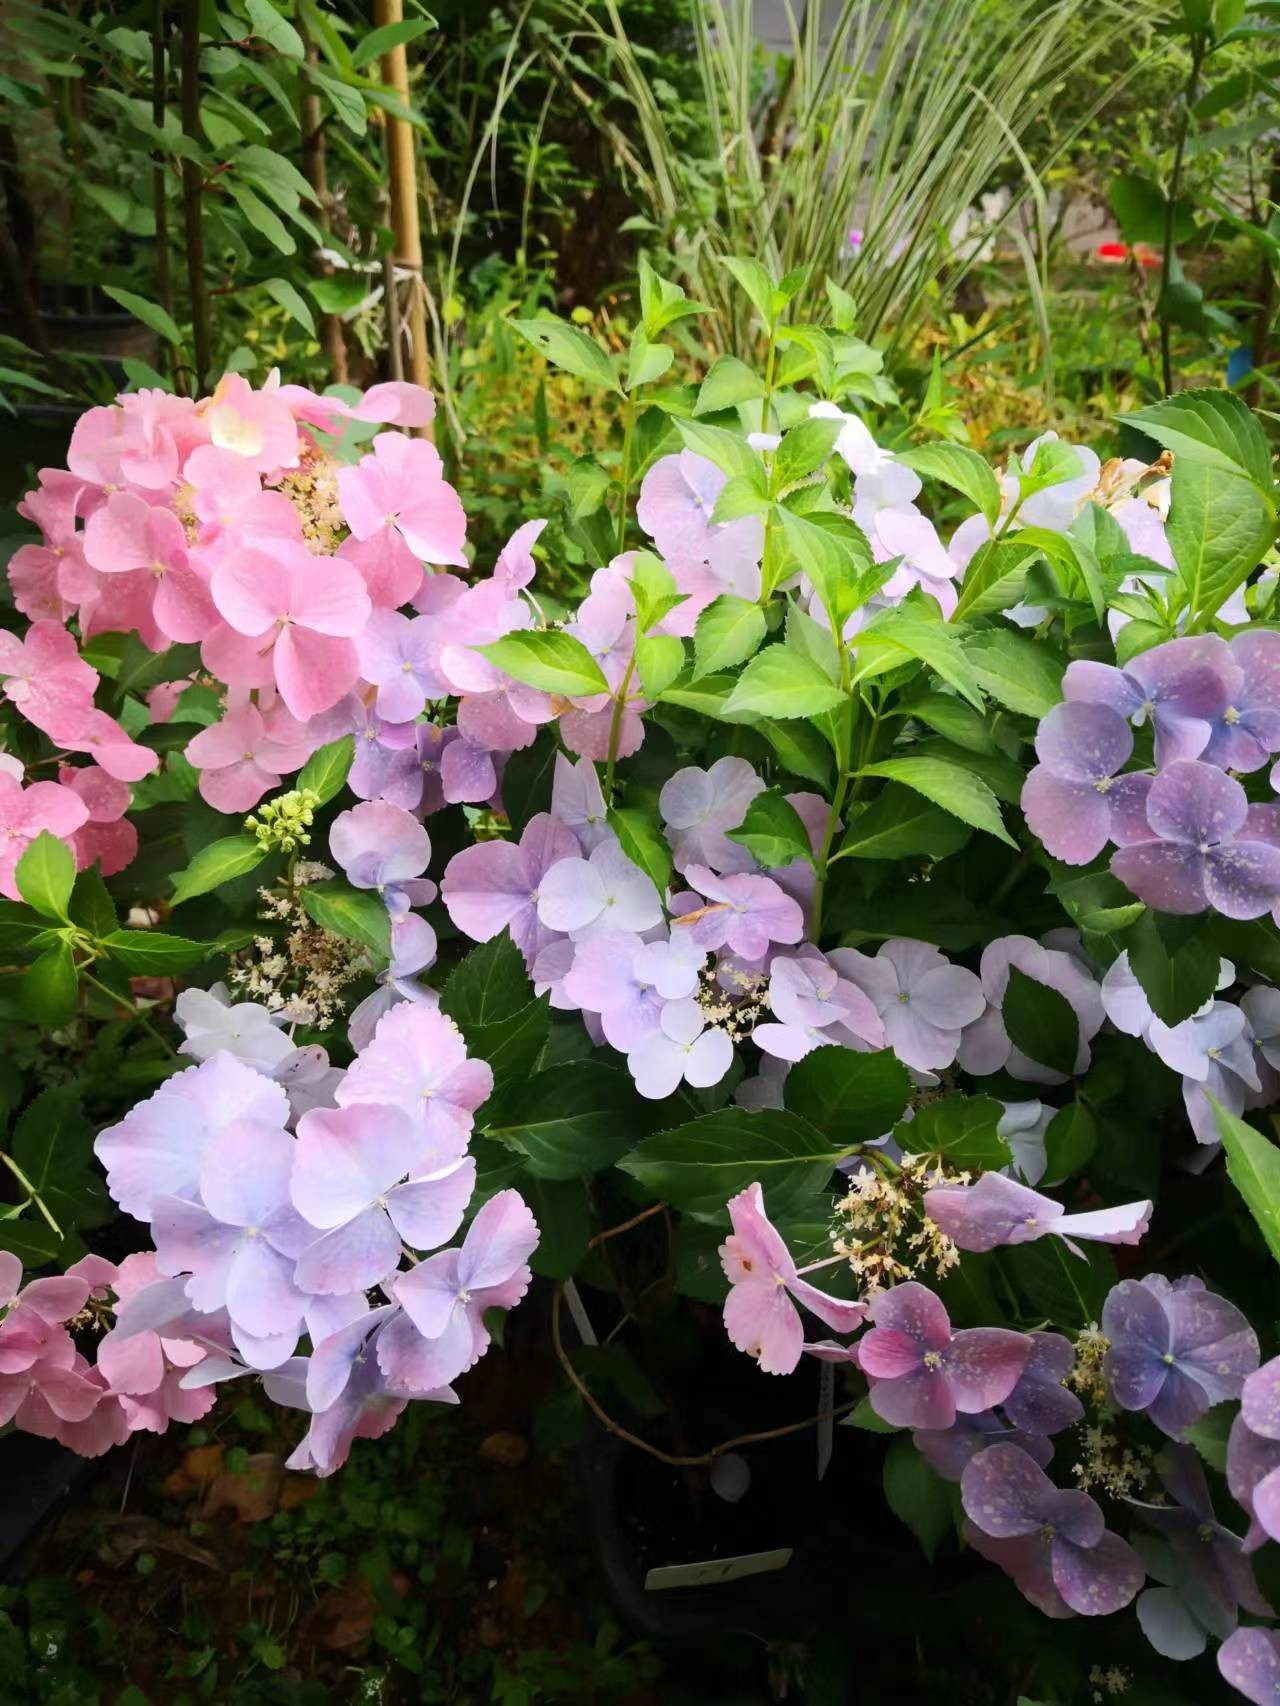 藤本绣球粉色蓝色绣球八仙花可调色垂吊盆栽阳台庭院